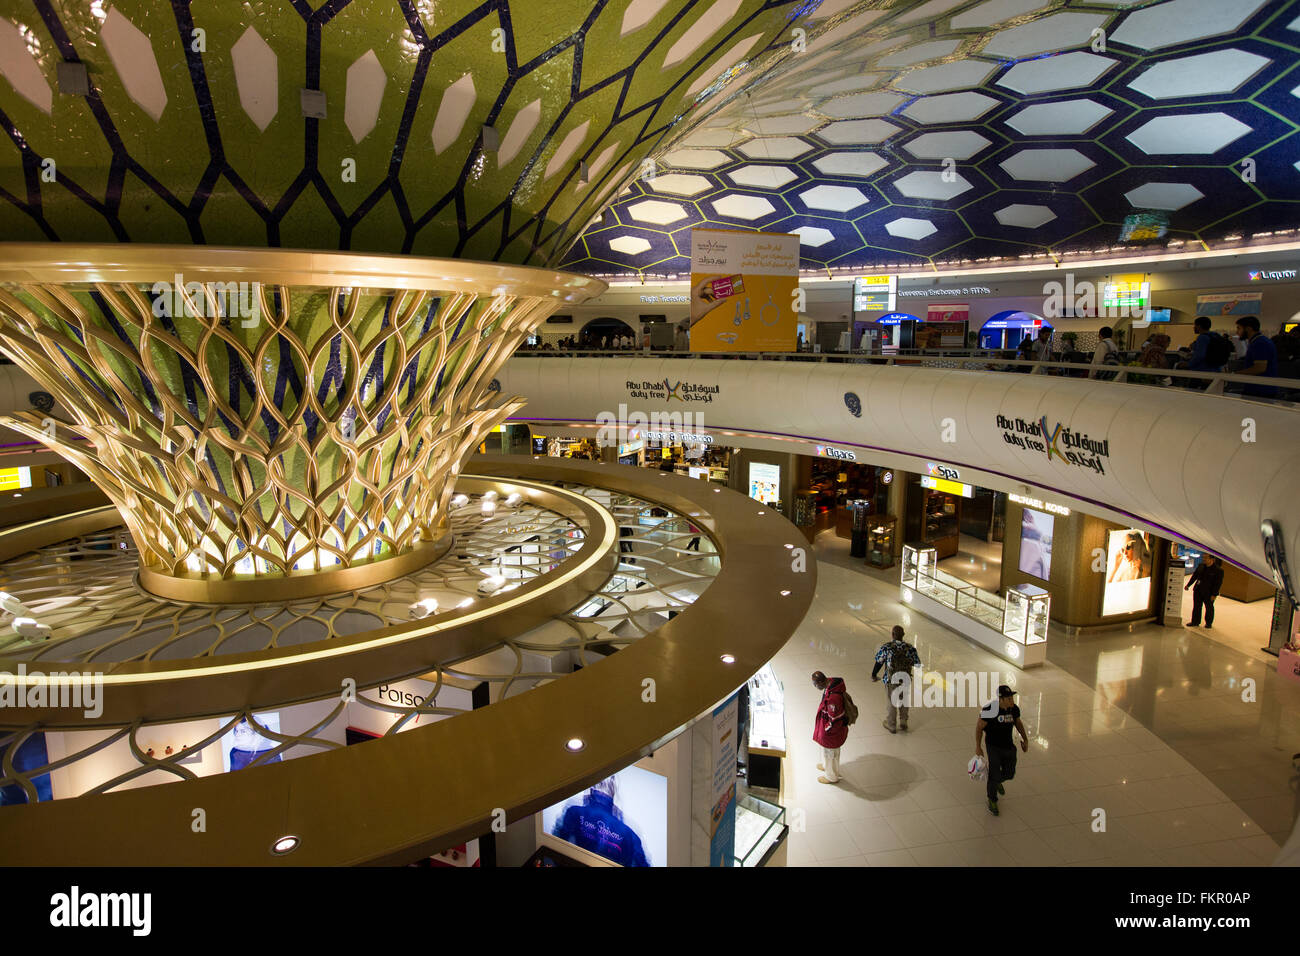 United Arab Emirates, Abu Dhabi, Airport, Duty Free shopping area Stock Photo